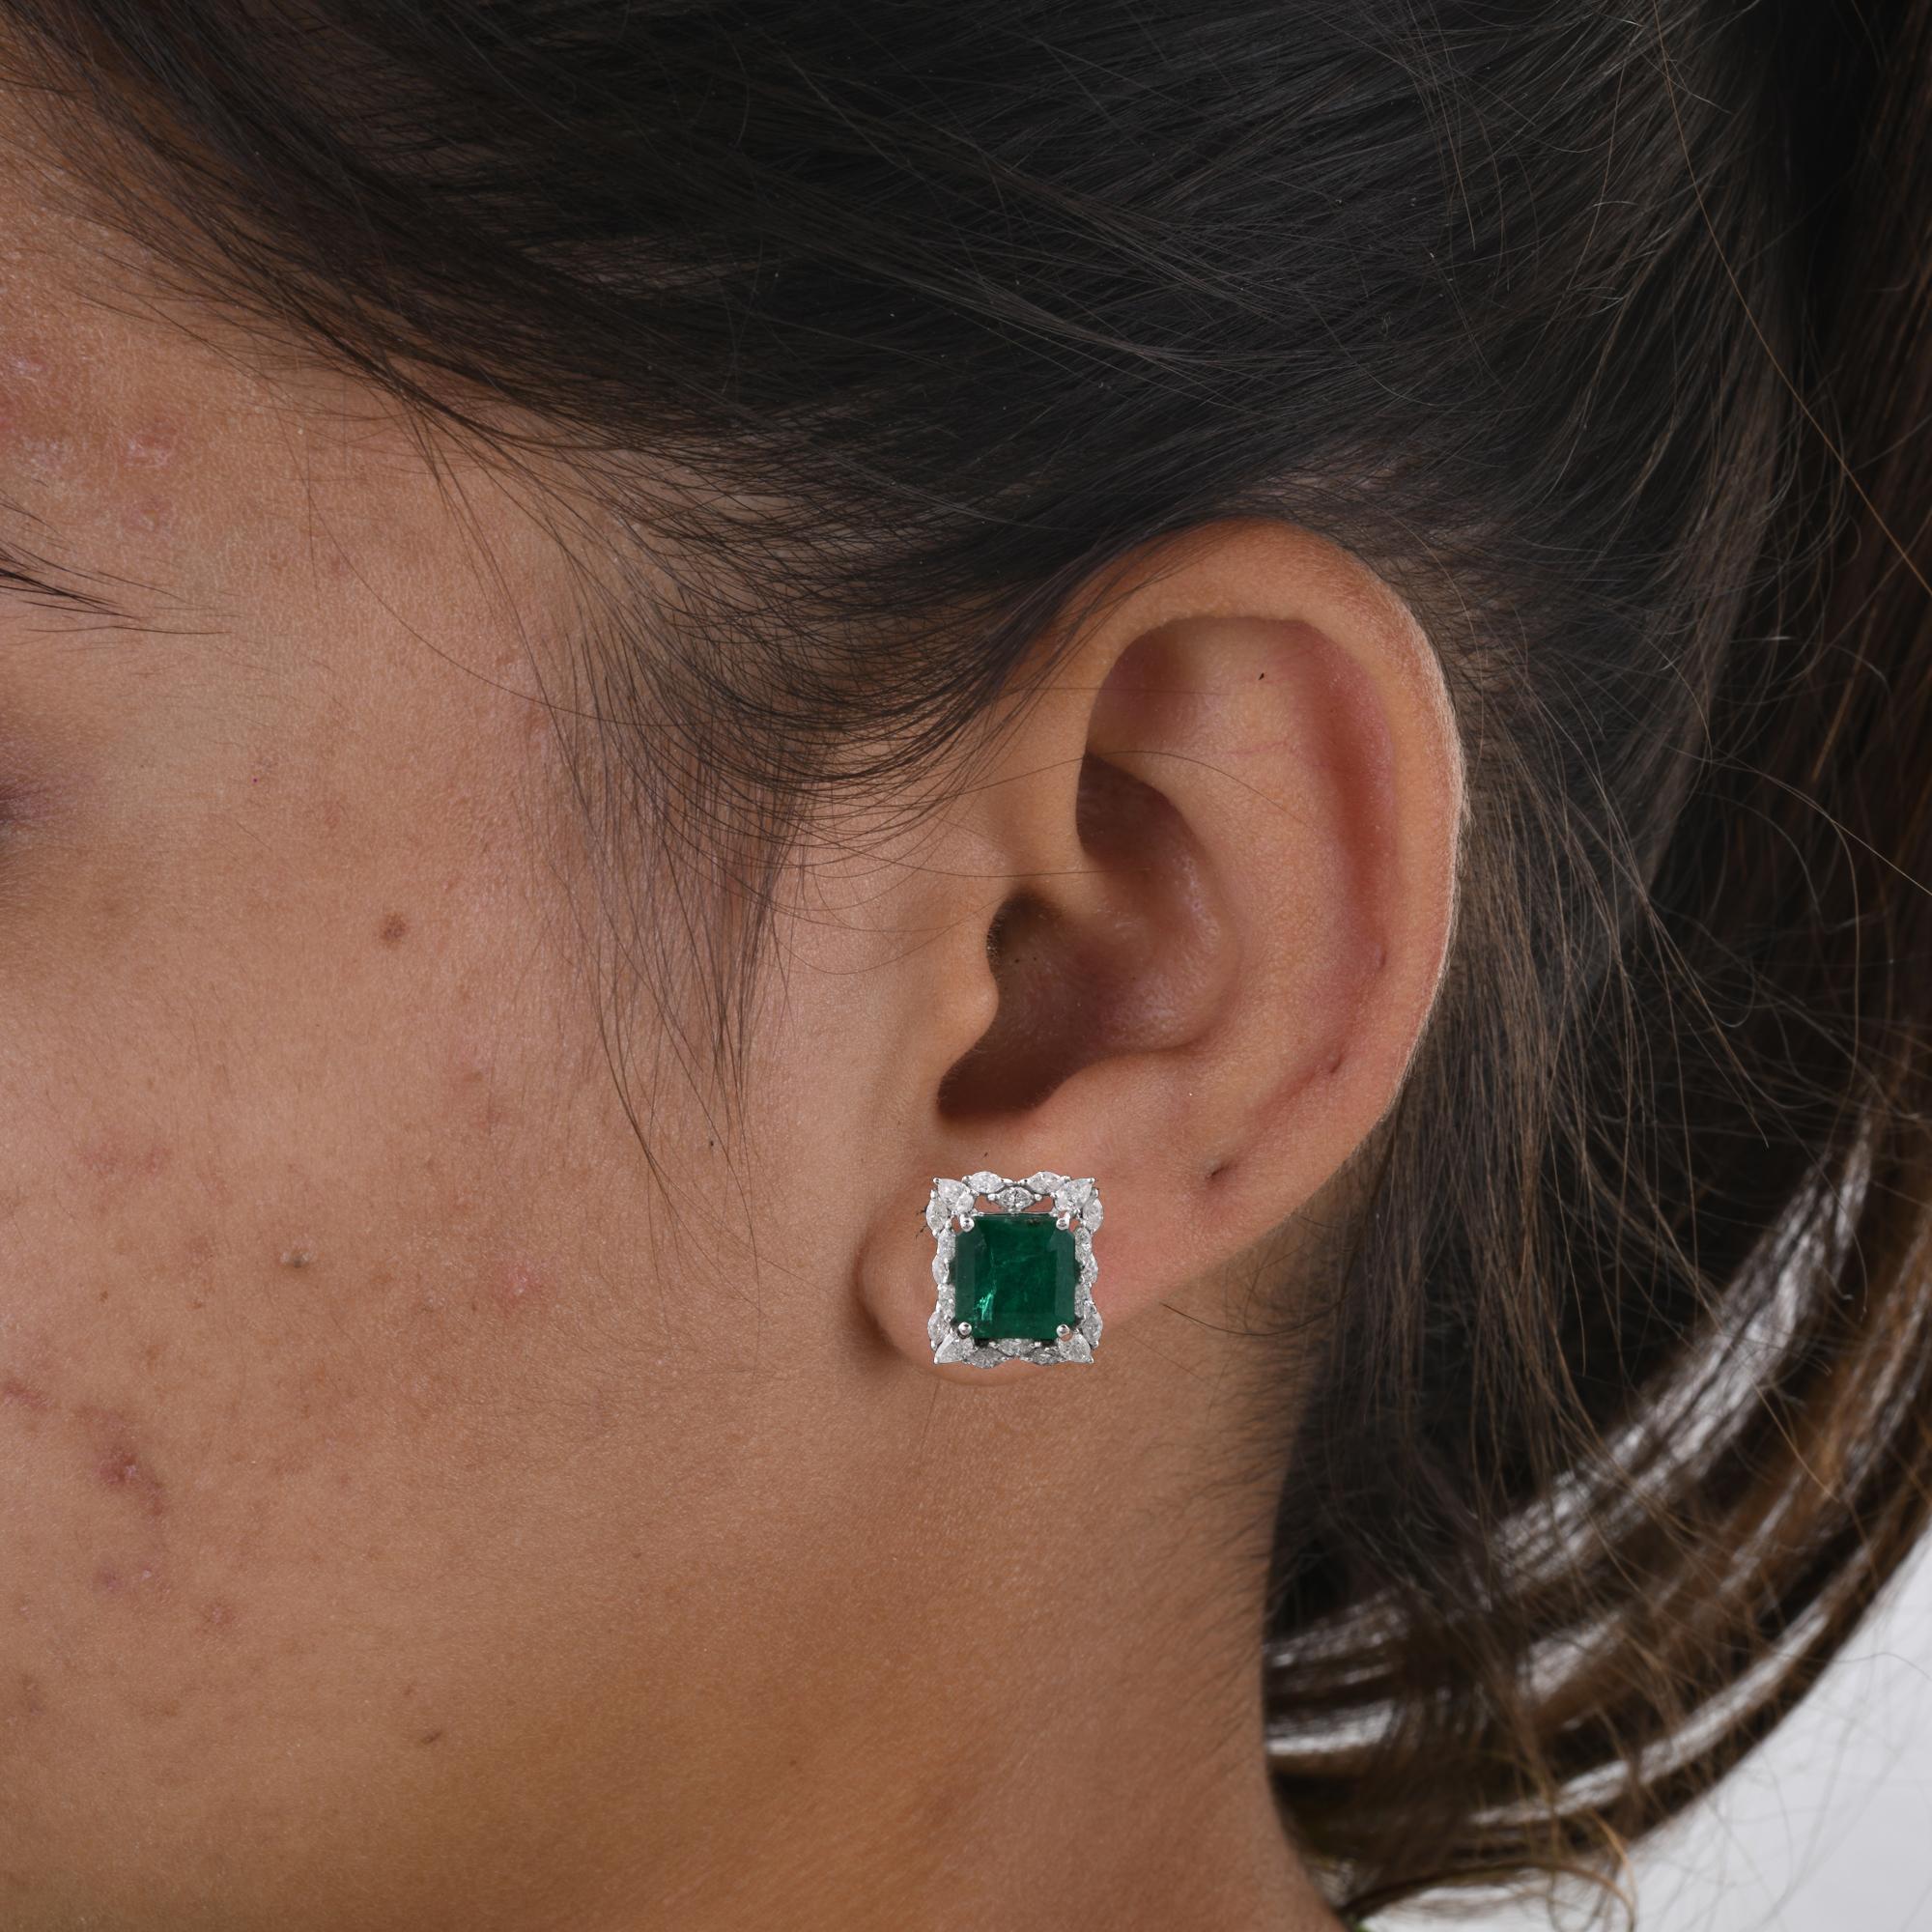 Modern Zambian Emerald Gemstone Stud Earrings Diamond 18 Karat White Gold Fine Jewelry For Sale